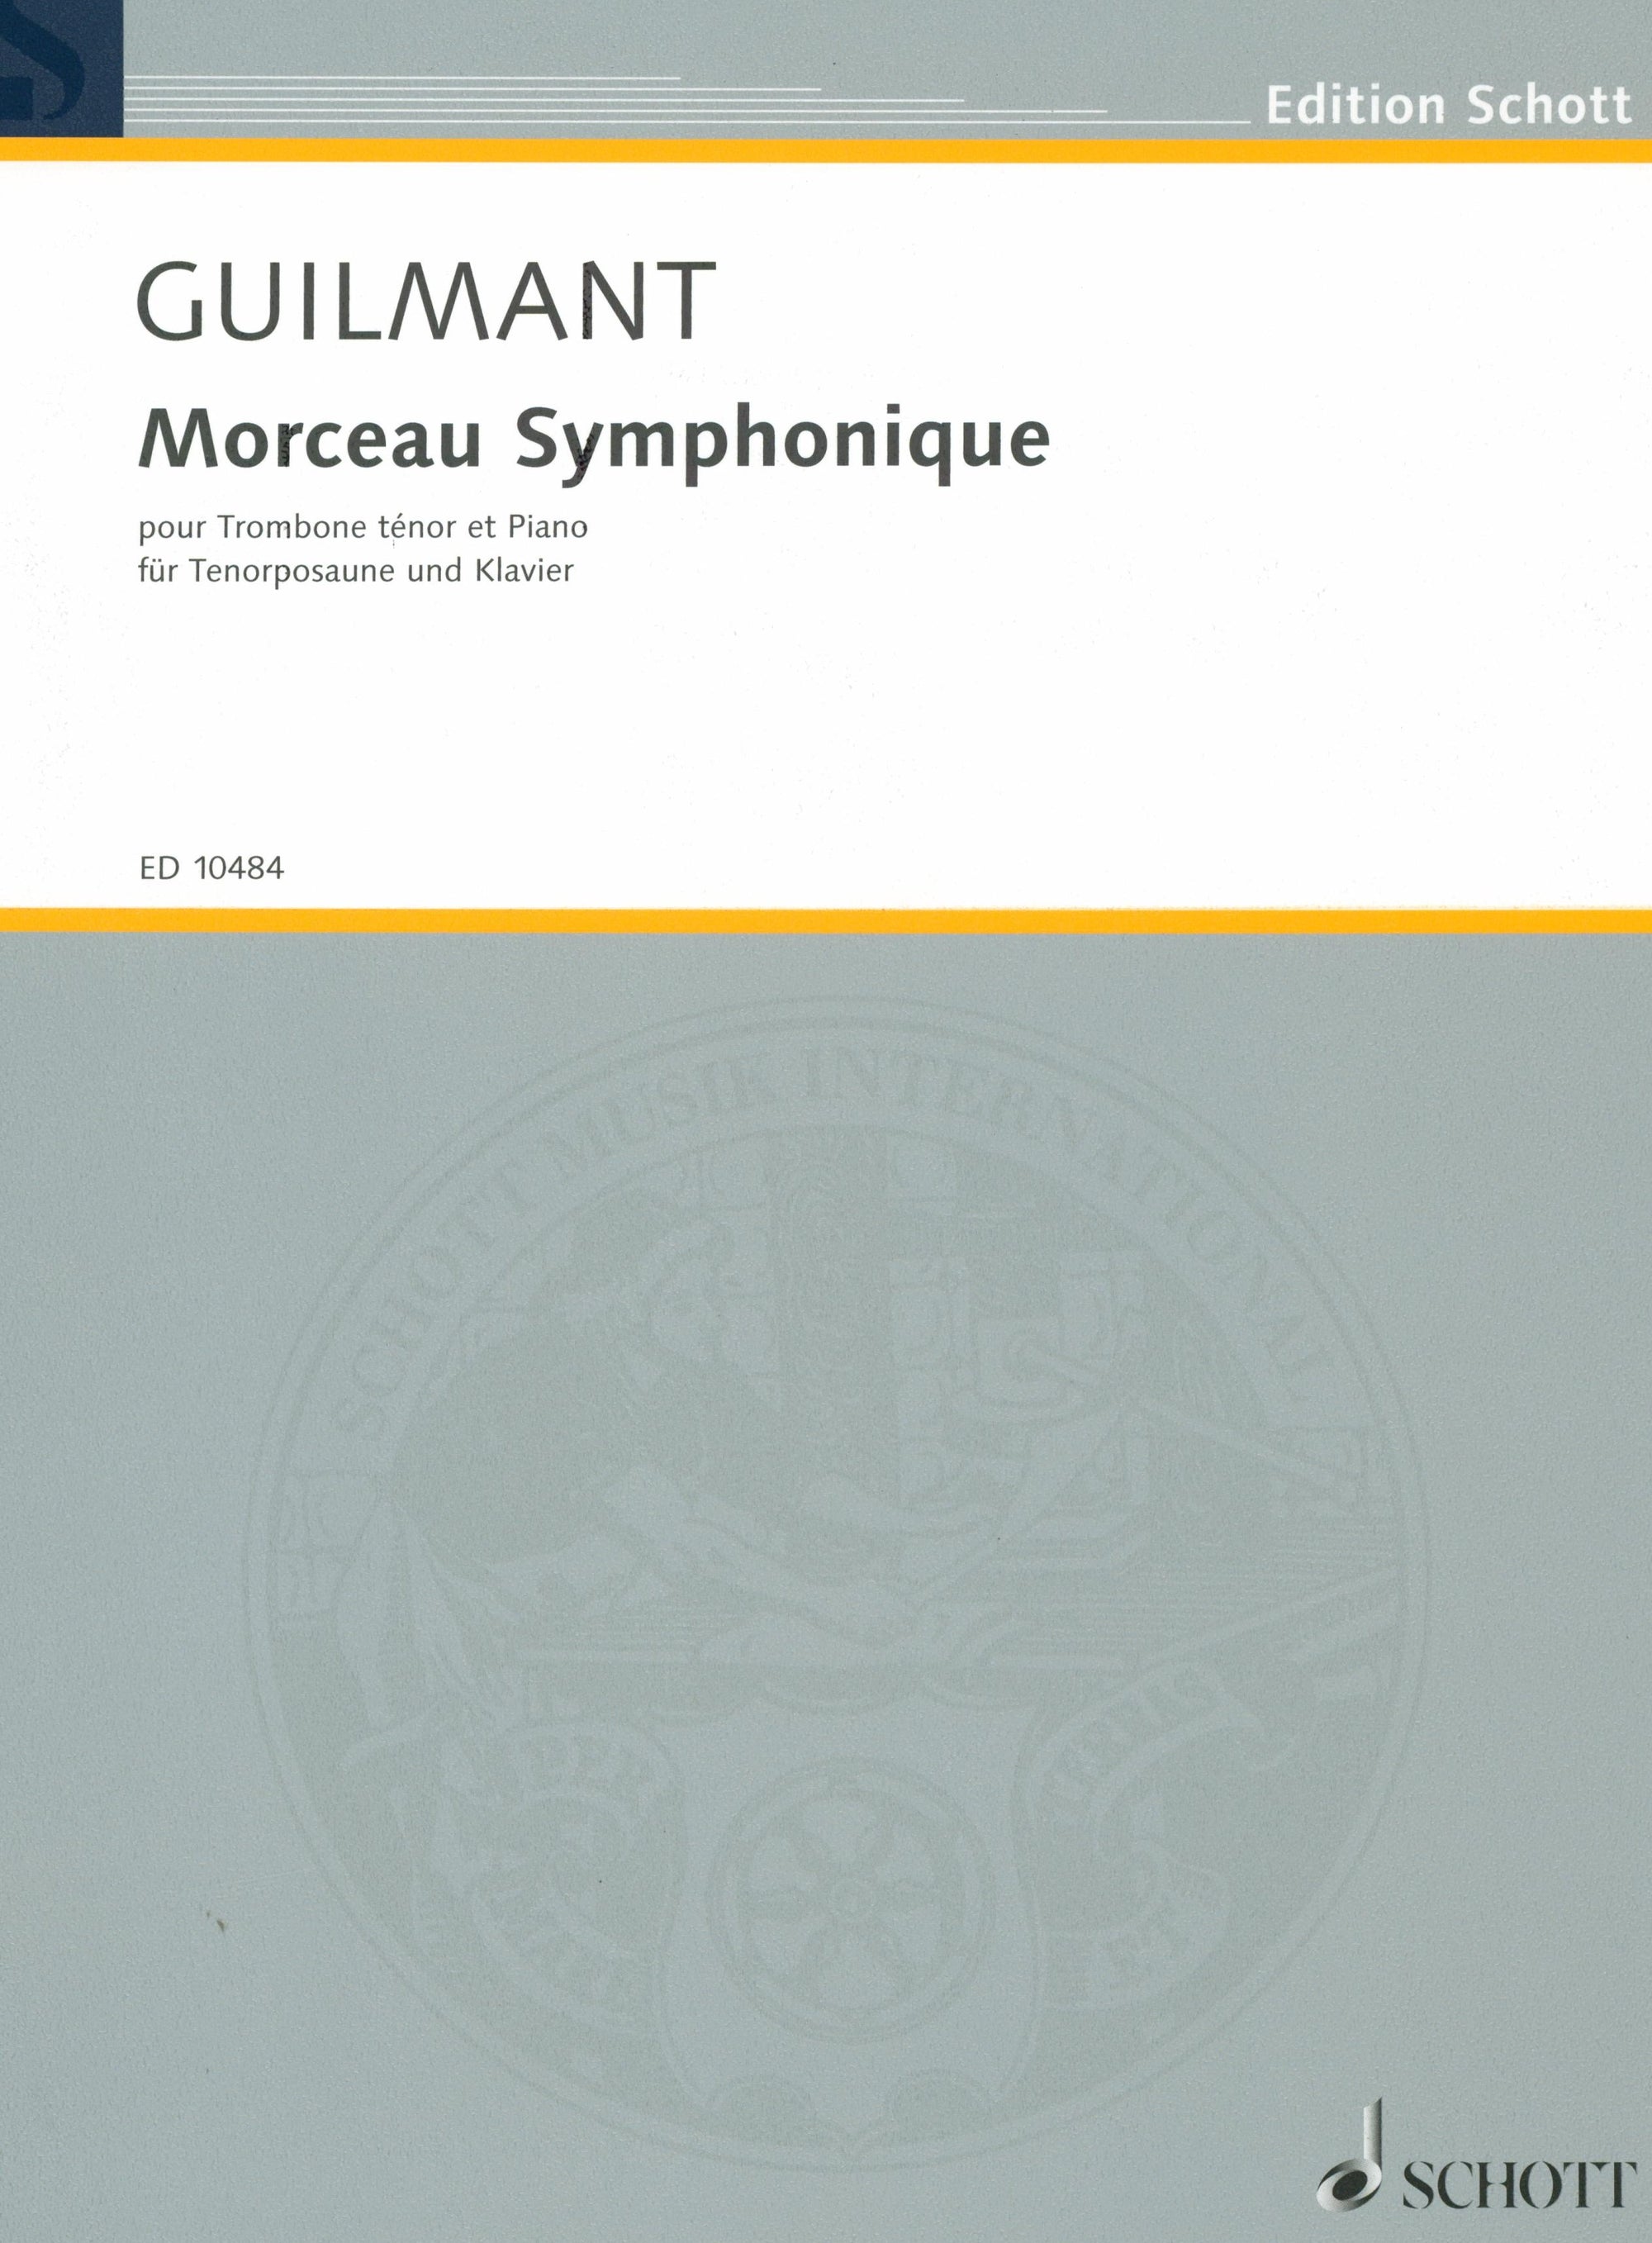 Guilmant: Morceau symphonique, Op. 88